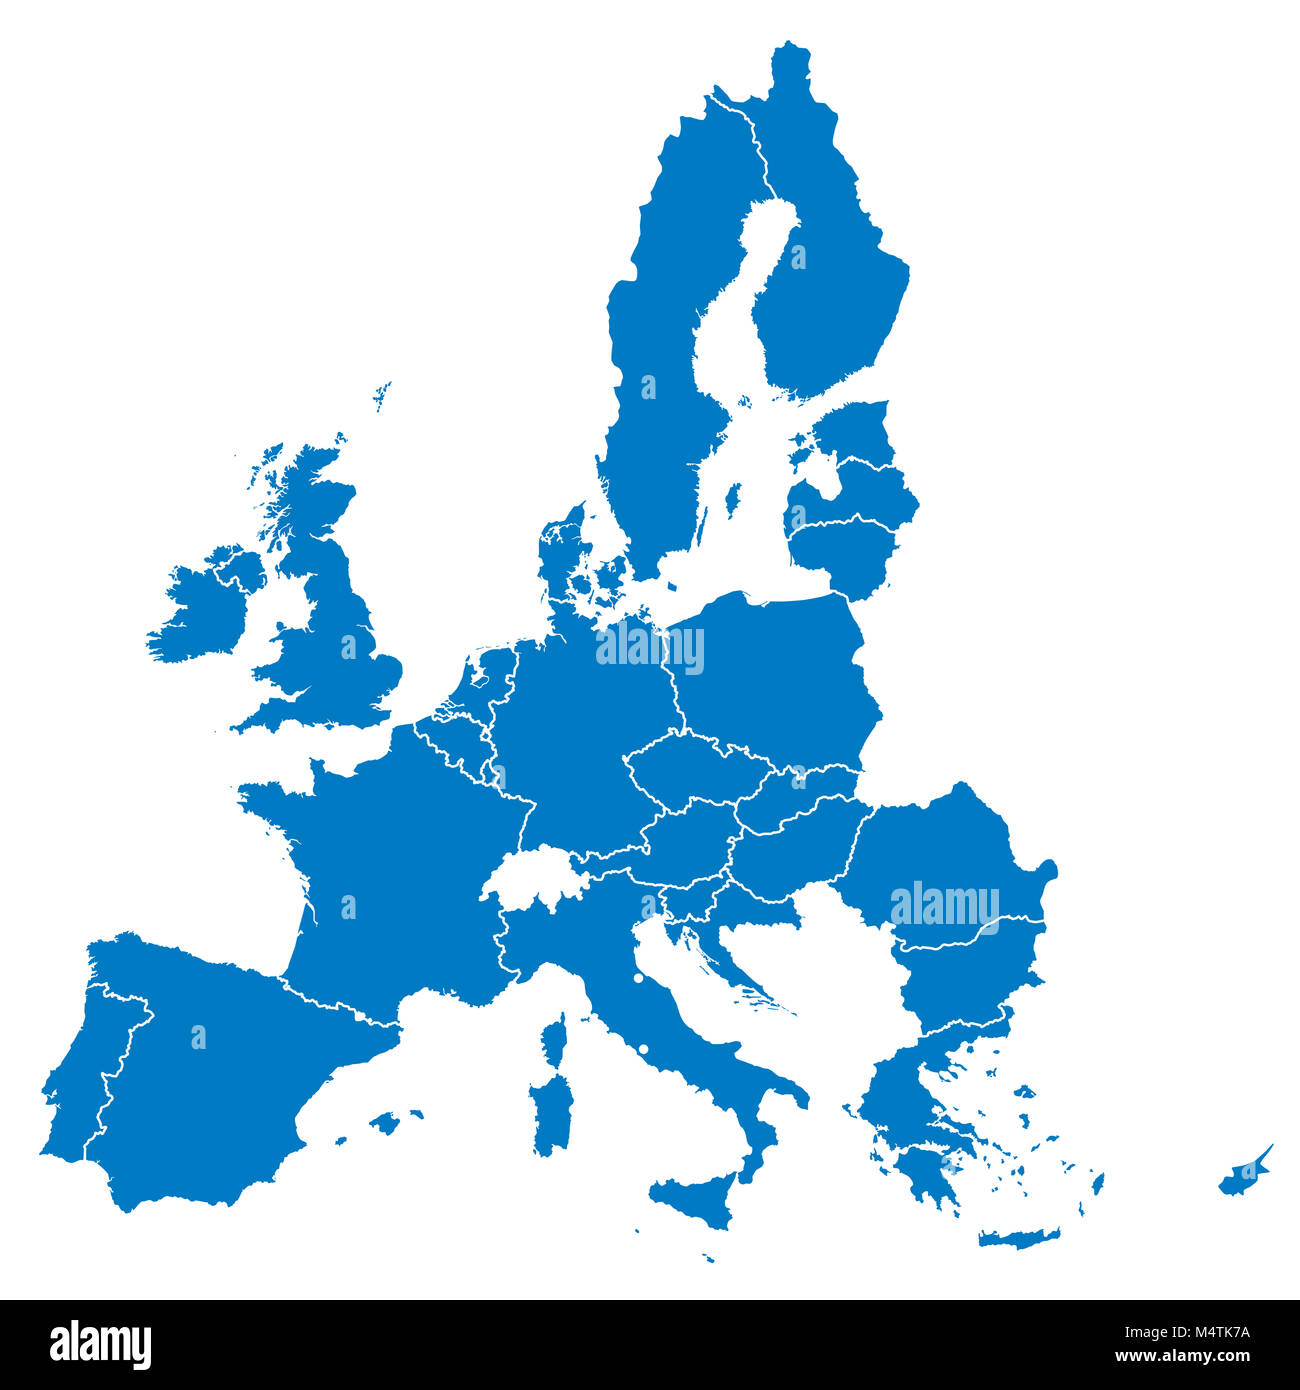 Unione Europea, isolato su sfondo bianco, con tutti i singoli paesi. Tutti i 28 Stati membri dell'UE, colorato in blu. Politica e unione economica in Europa. Ho Foto Stock